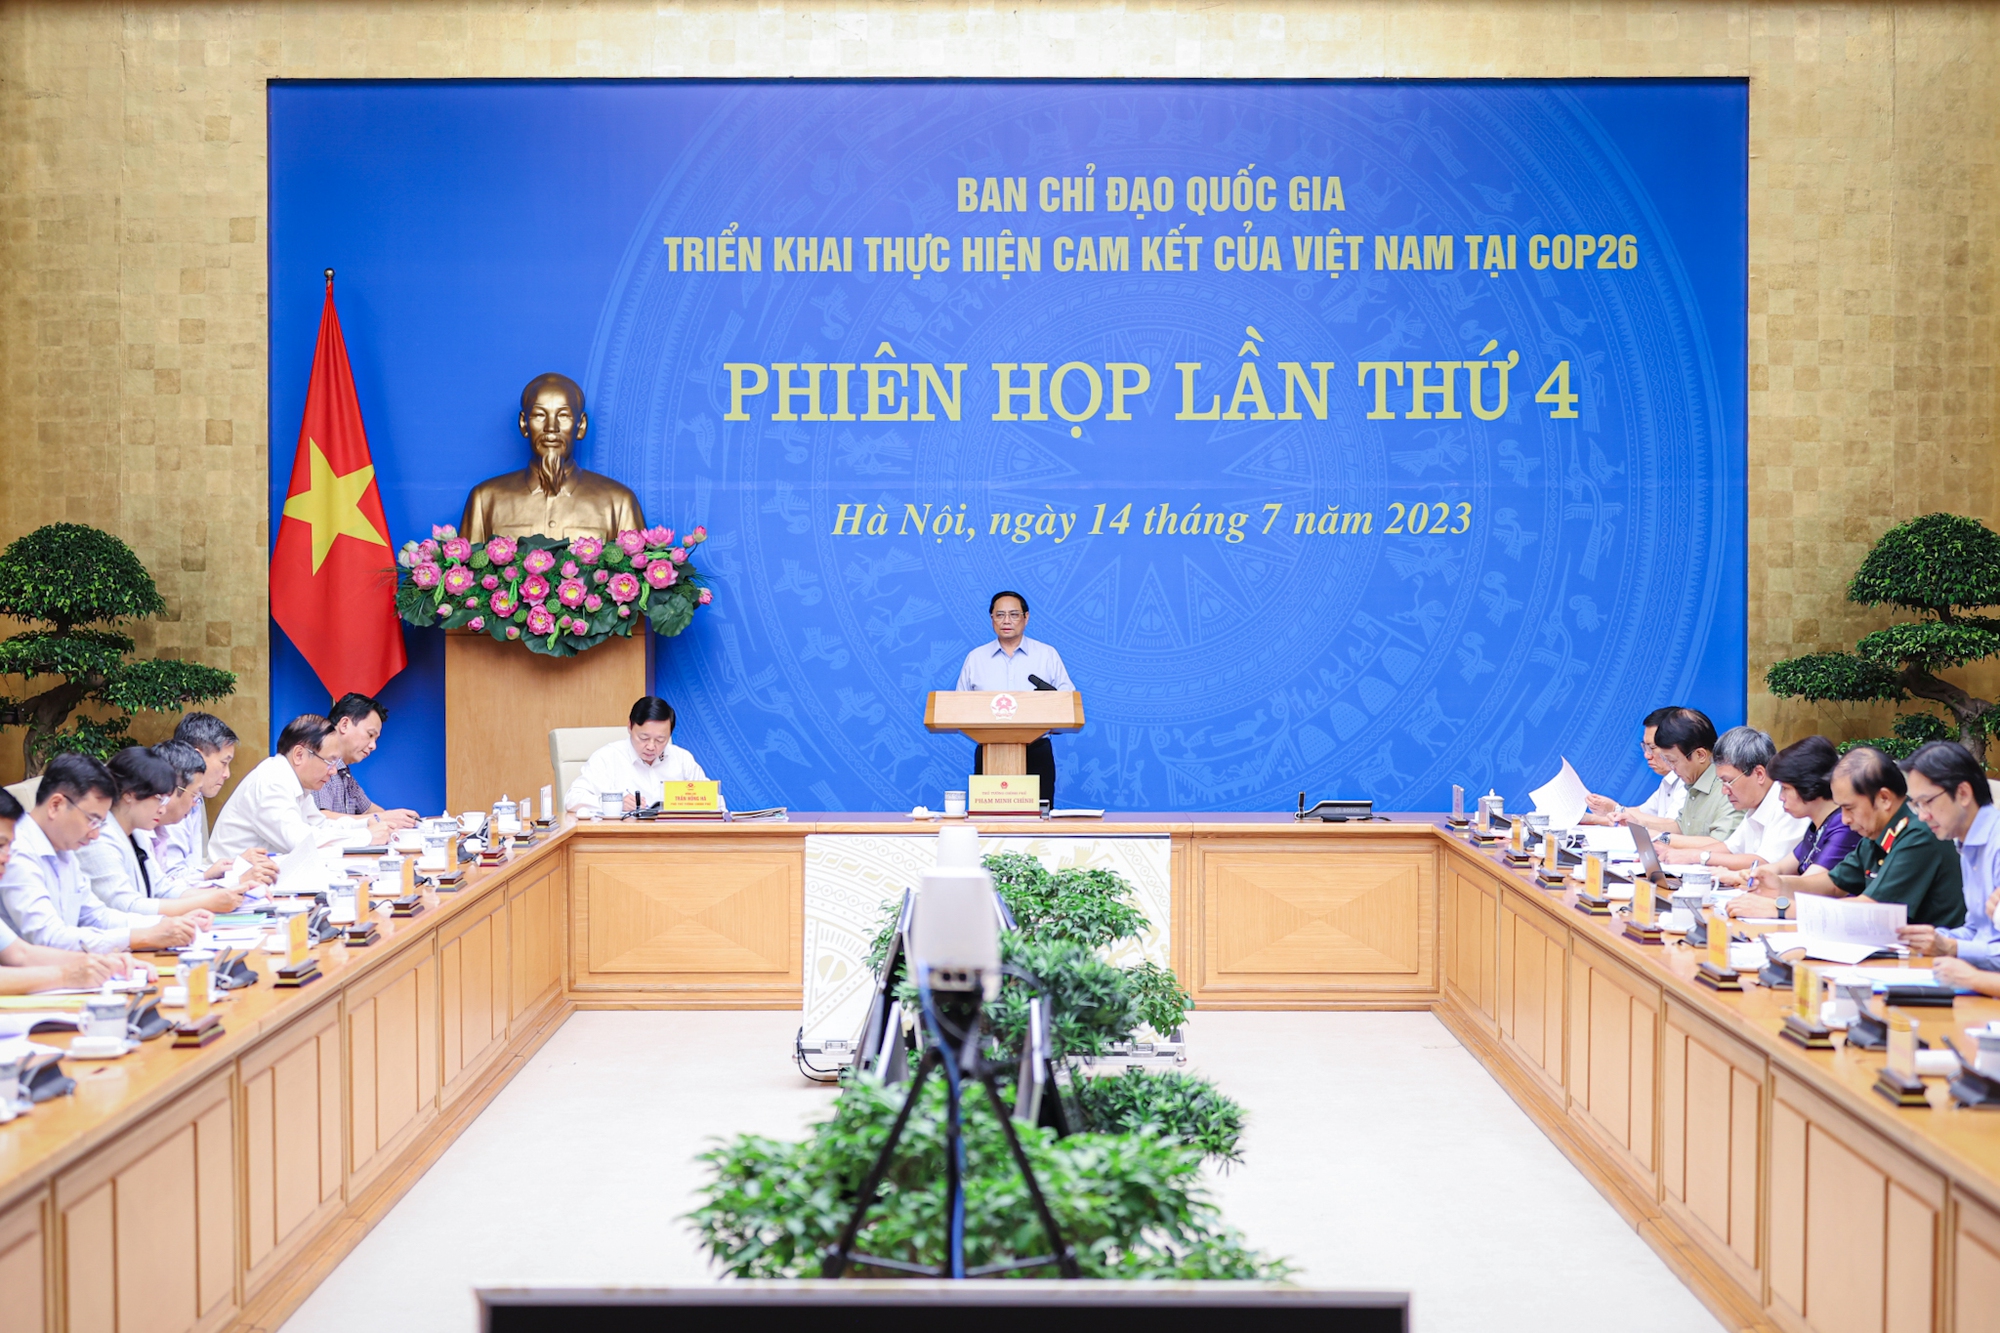 Thủ tướng Phạm Minh Chính chủ trì phiên họp lần thứ 4 của Ban Chỉ đạo quốc gia thực hiện cam kết tại COP26